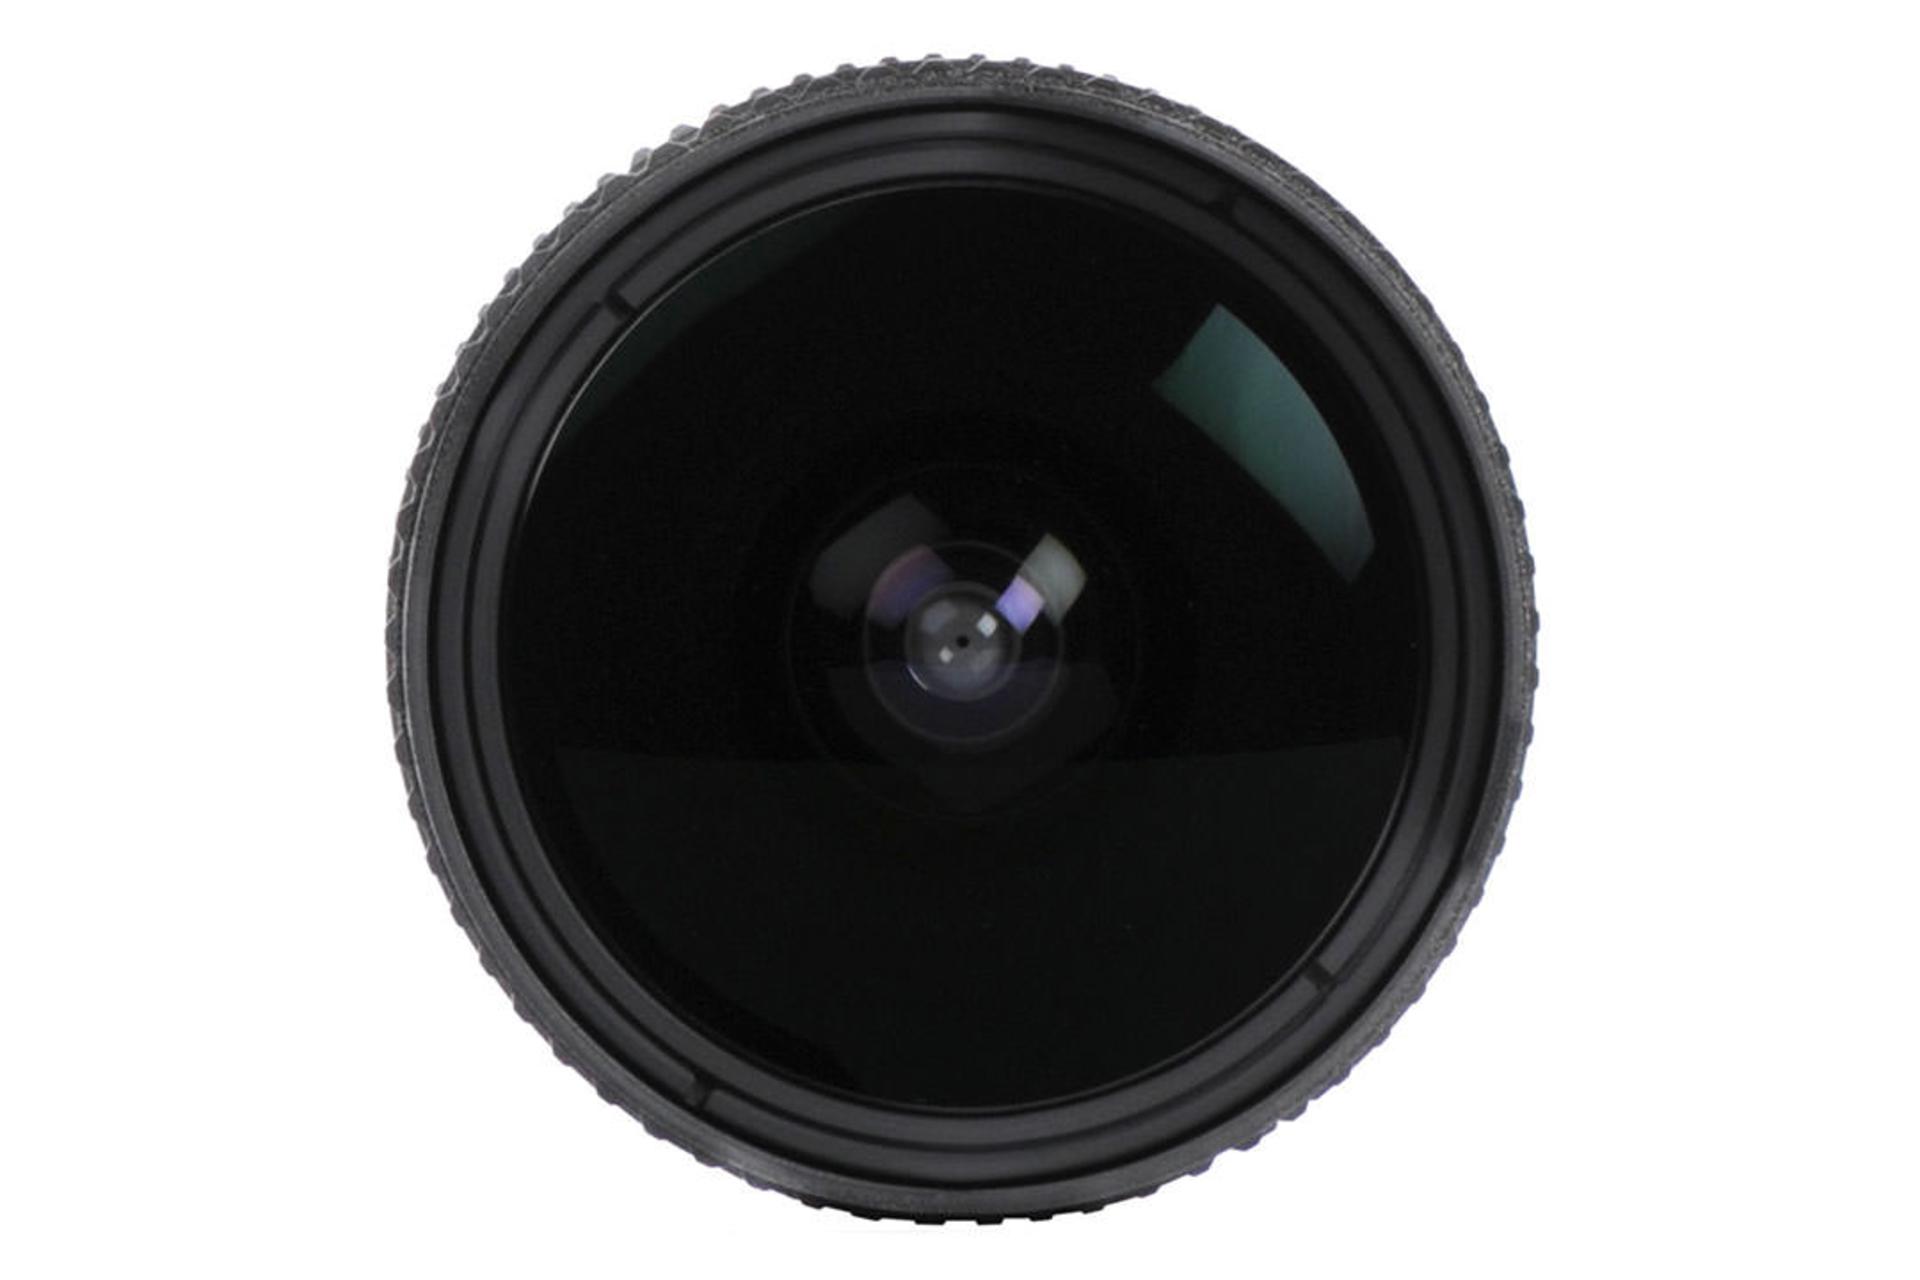 Nikon AF Fisheye-Nikkor 16mm f/2.8D	